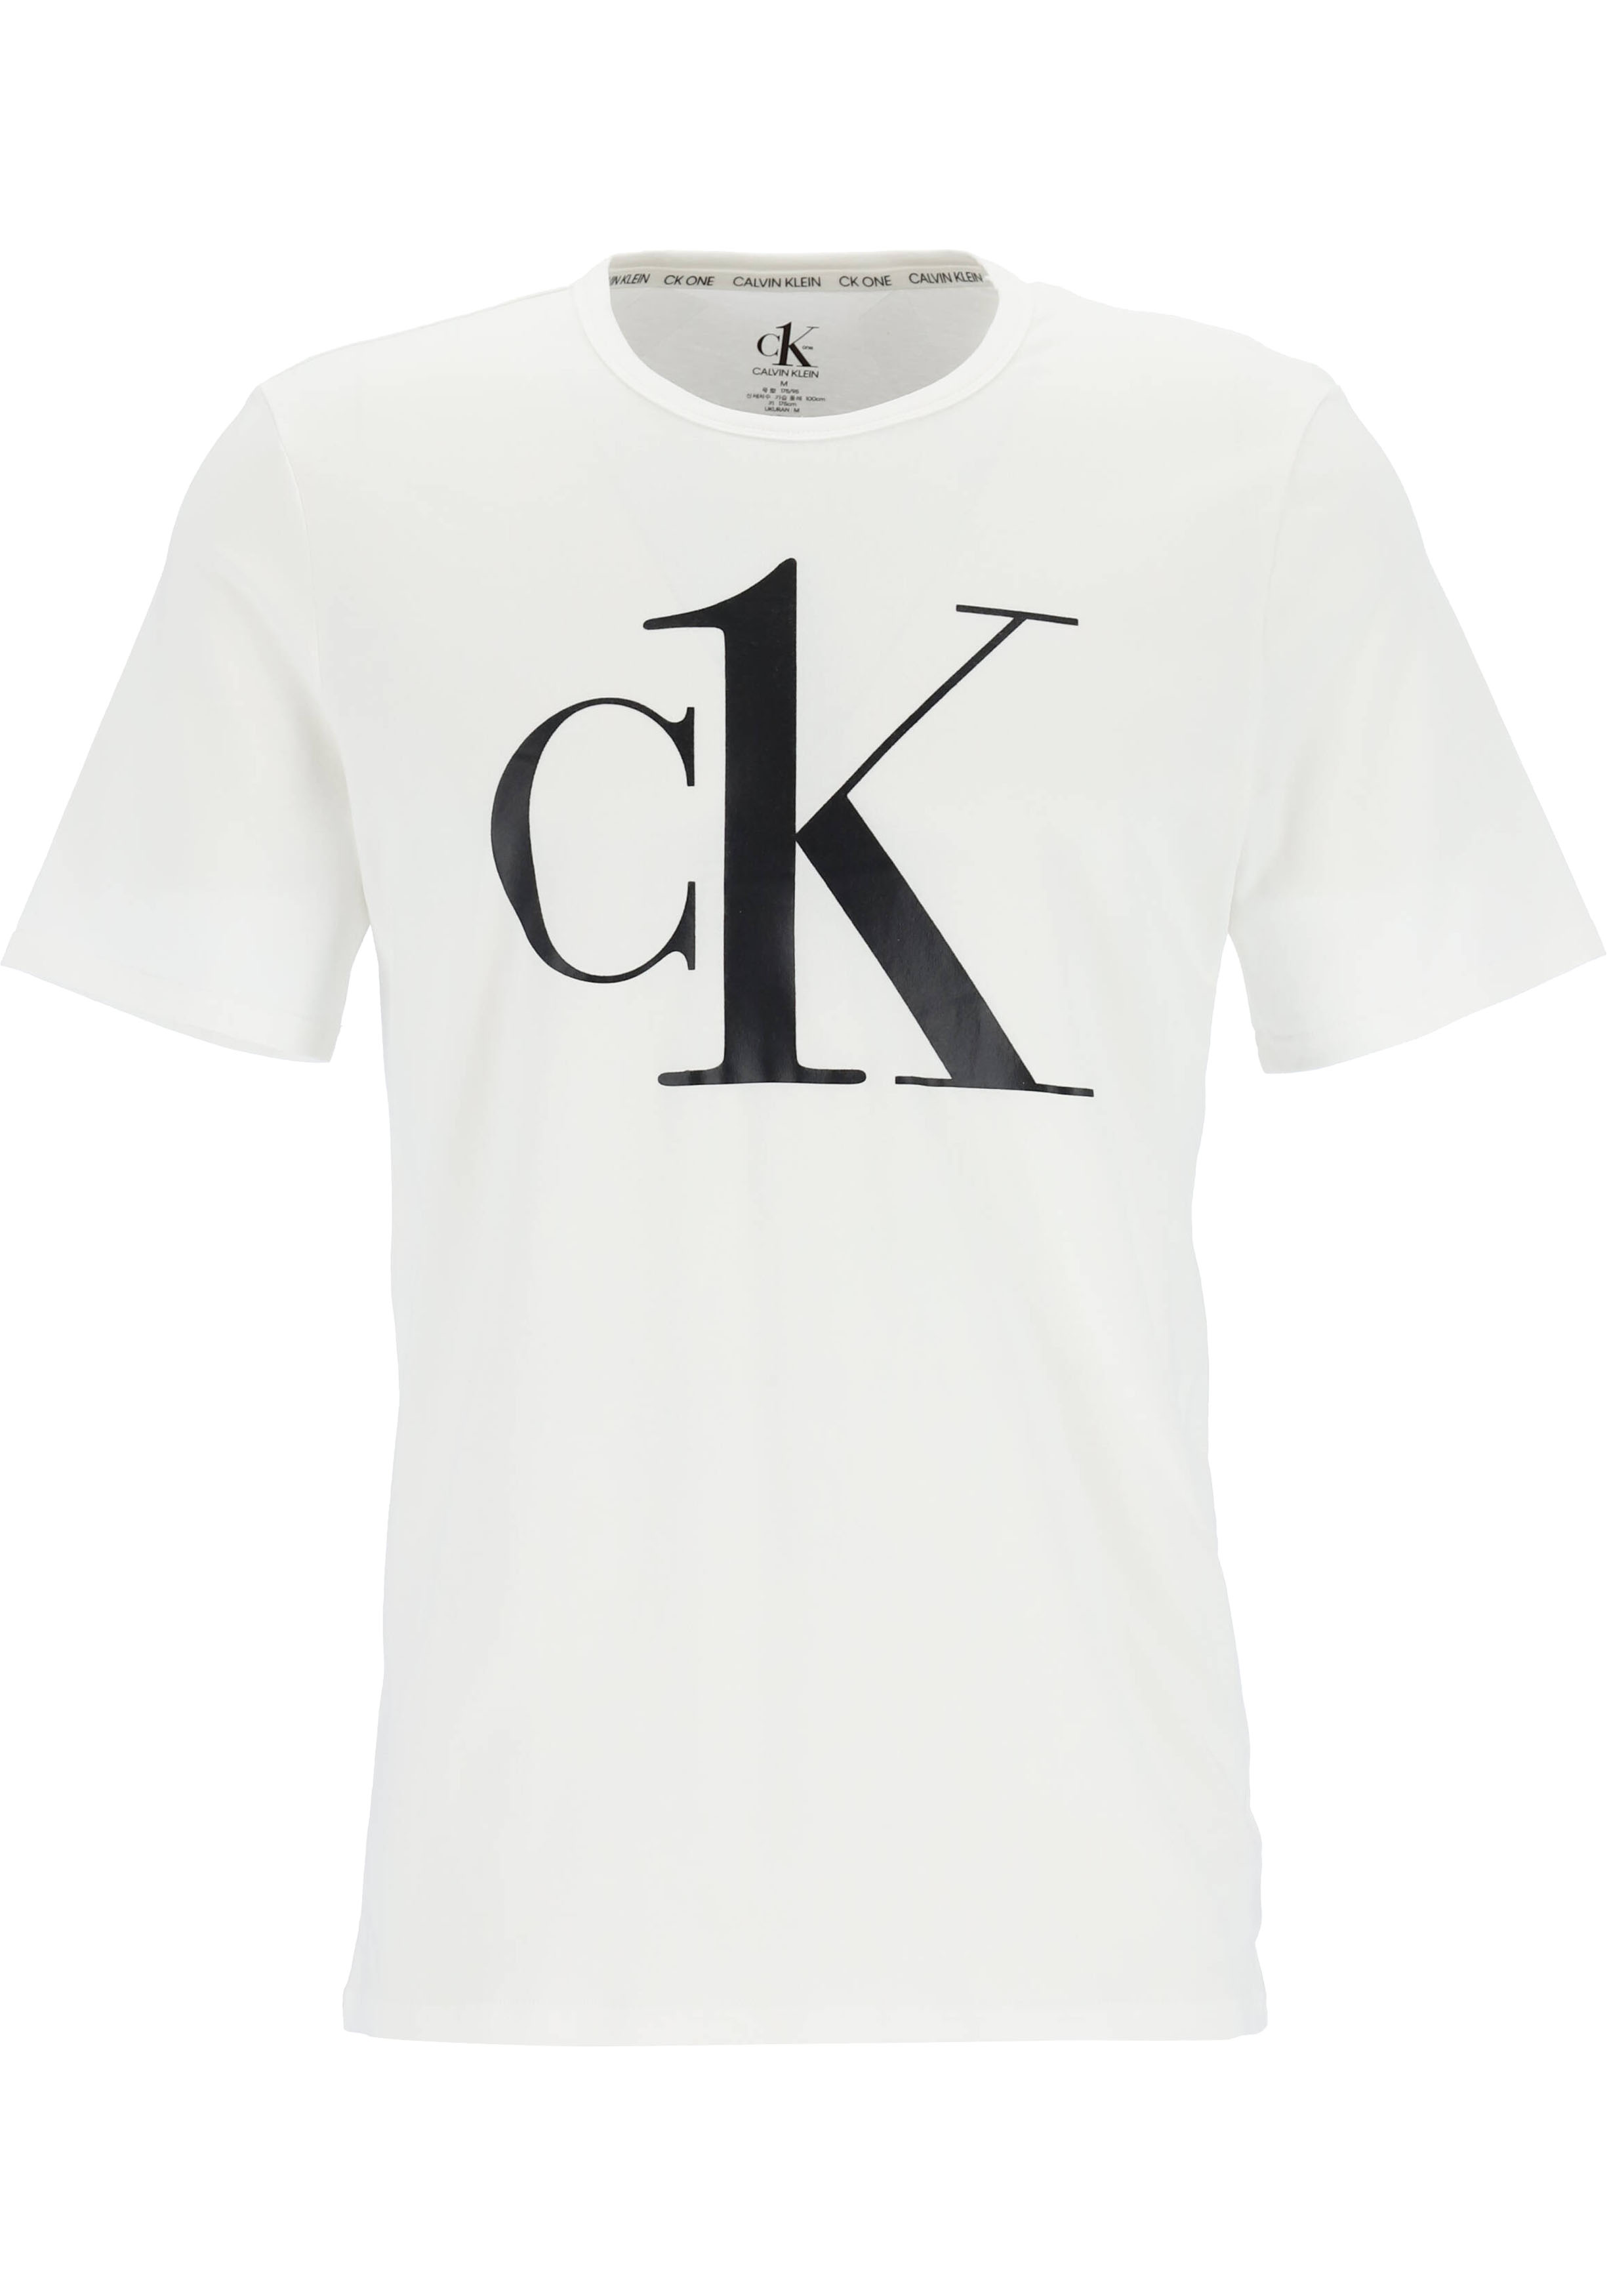 dagboek Ontstaan Wizard Calvin Klein CK ONE lounge T-shirt, heren lounge T-shirt O-hals, wit met...  - vakantie DEALS: bestel vele artikelen van topmerken met korting